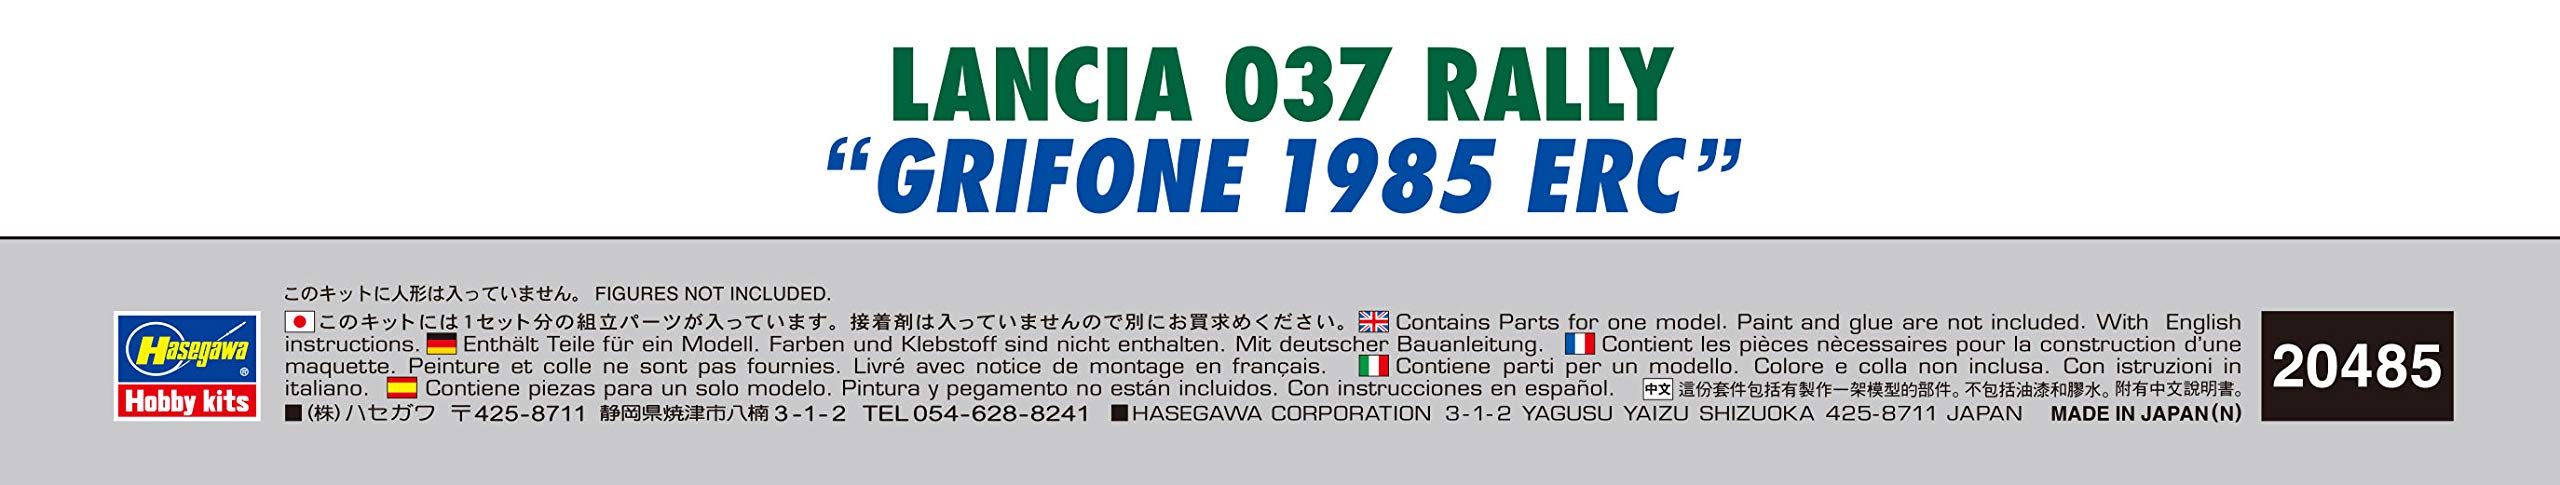 Hasegawa 1/24 Lancia 037 Rally Grifone 1985 Erc voitures à l'échelle japonaise Kit de modèle en Pvc